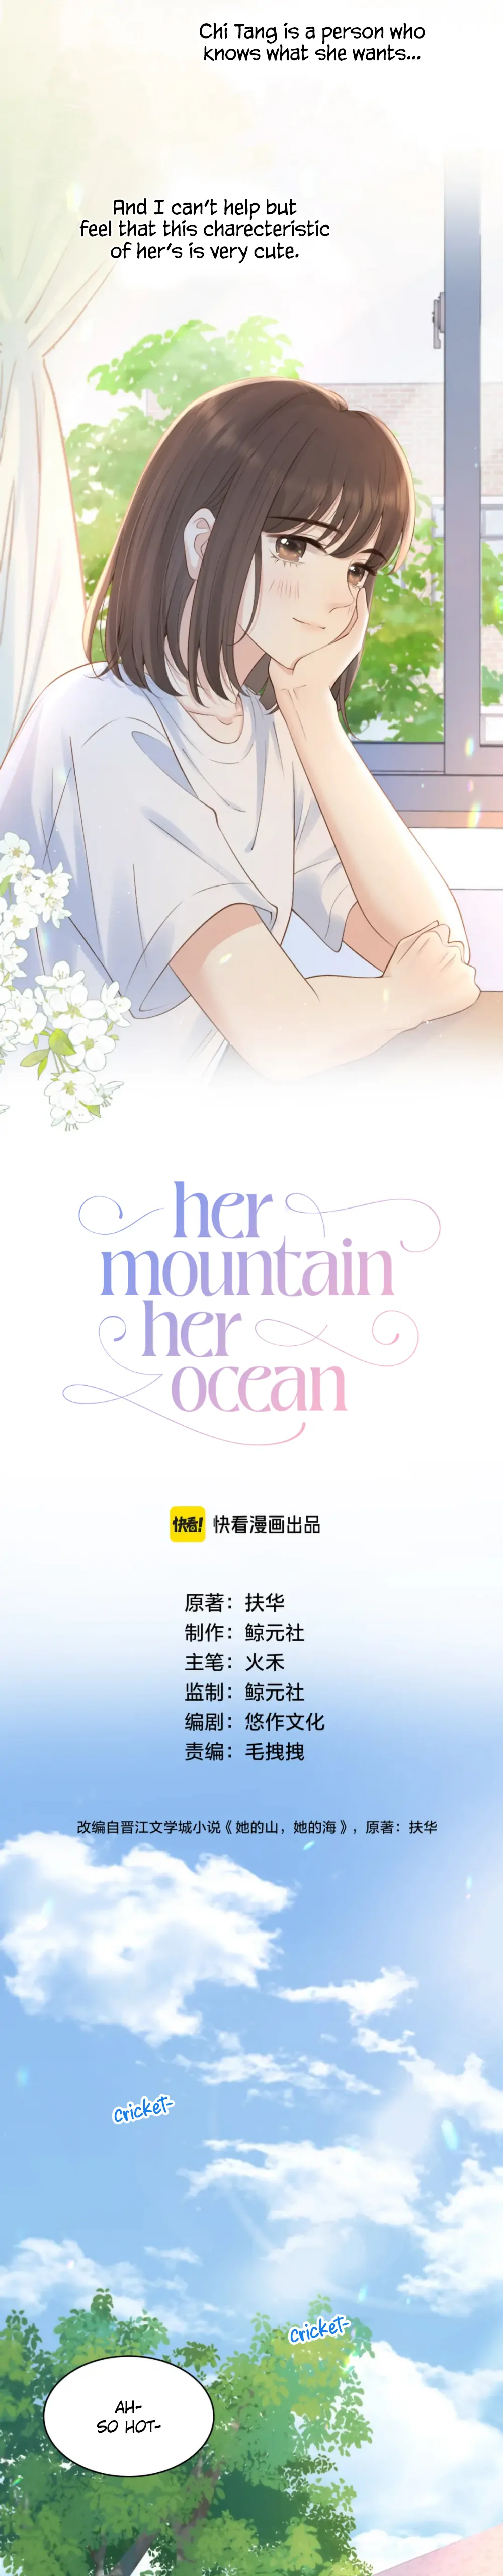 Her Mountain, Her Ocean chapter 26